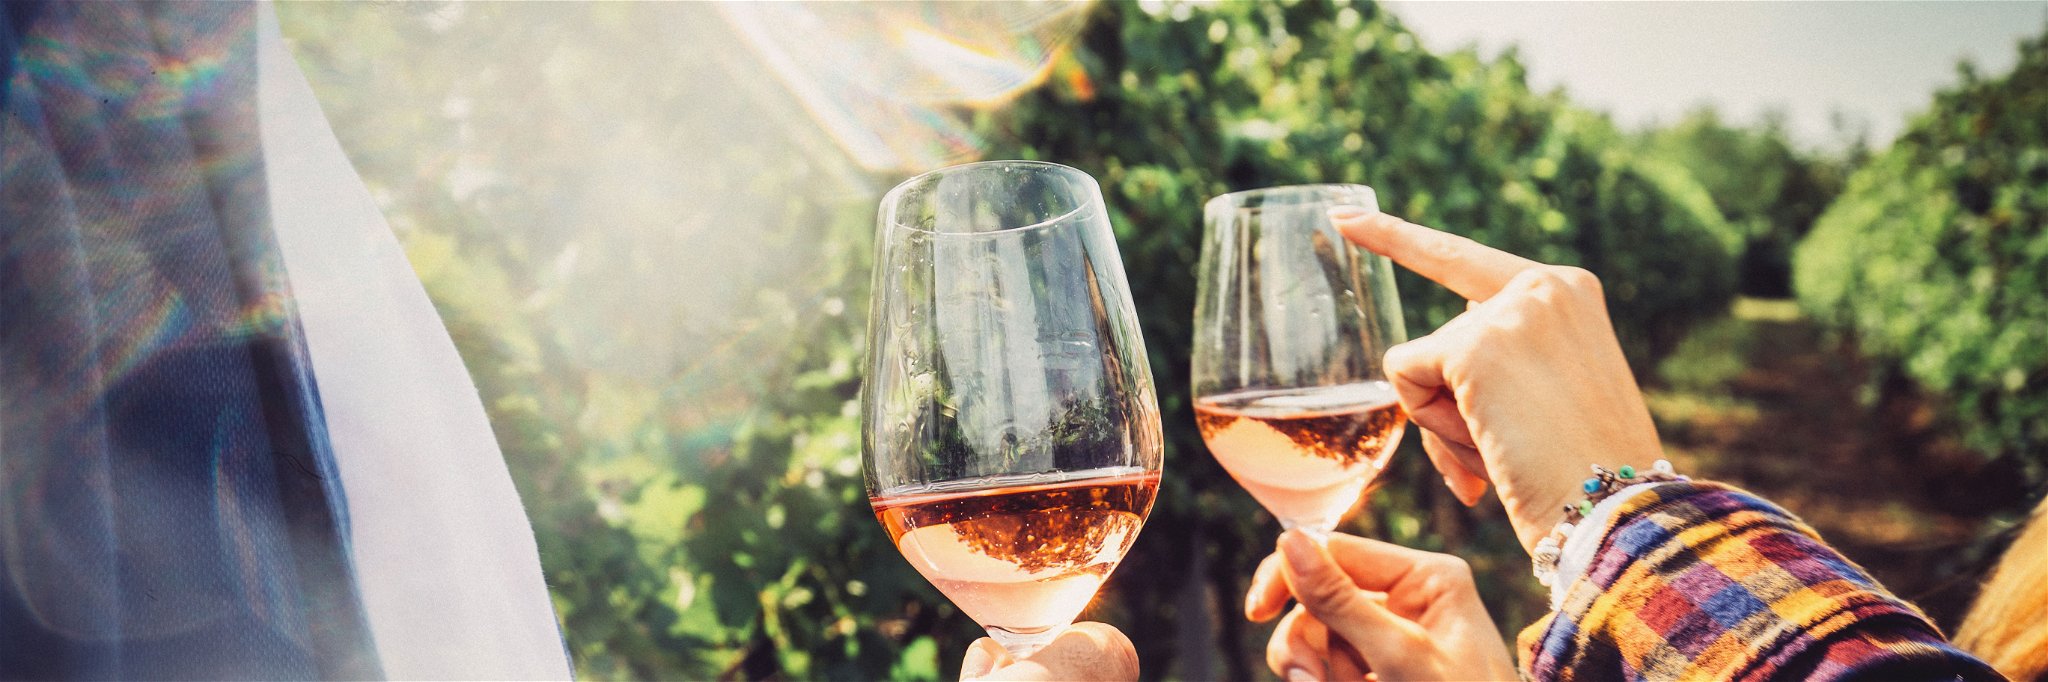 Für ein gepflegtes Glas Rosé aus Österreich findet man im Sommer immer eine gute Gelegenheit.